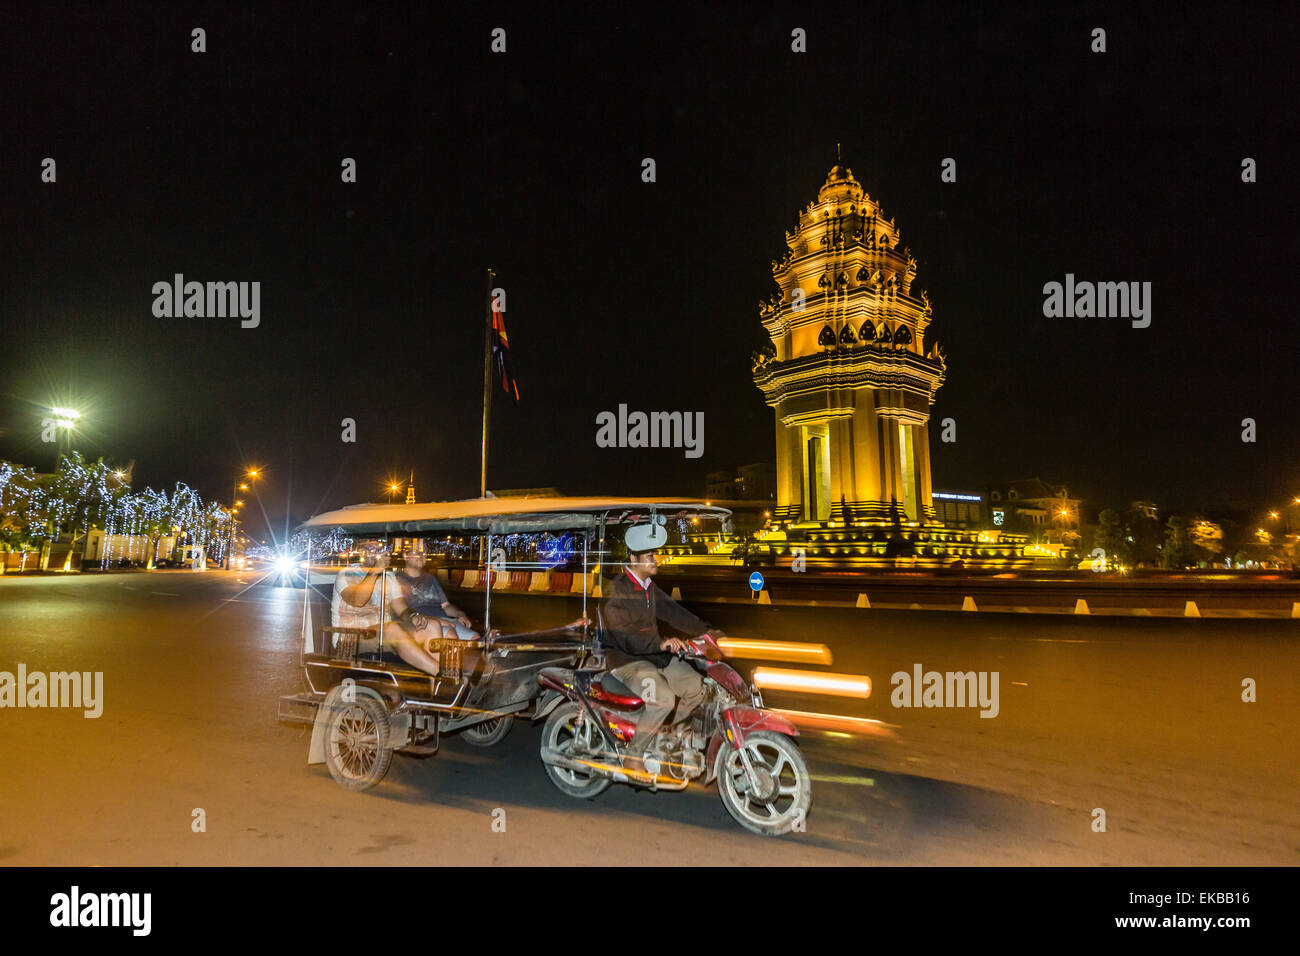 Photographie de nuit le Monument de l'indépendance avec les tuk-tuk, Phnom Penh, Cambodge, Indochine, Asie du Sud, Asie Banque D'Images